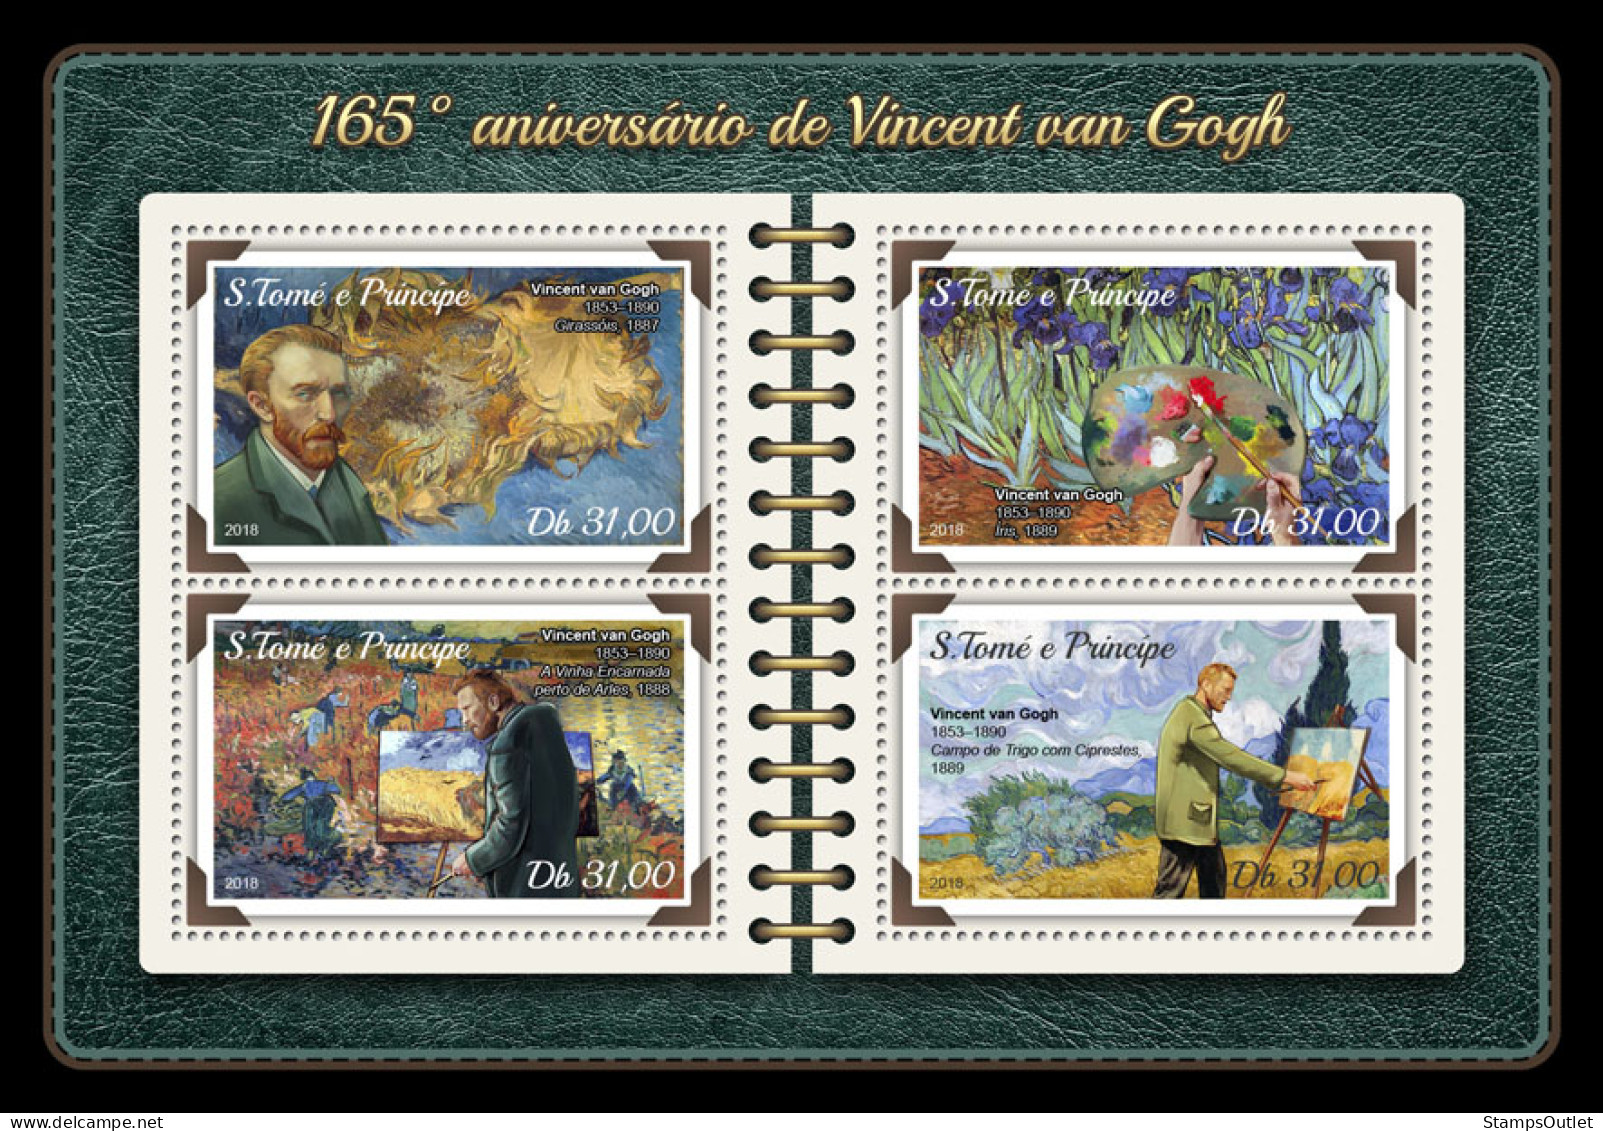  SÃO TOMÉ AND PRÍNCIPE  2018 MNH  Vincent Van Gogh   Code: 7653-7656. Scott Code: 3549Yvert&. Tellier Code: 6121-6124 - Sao Tome Et Principe